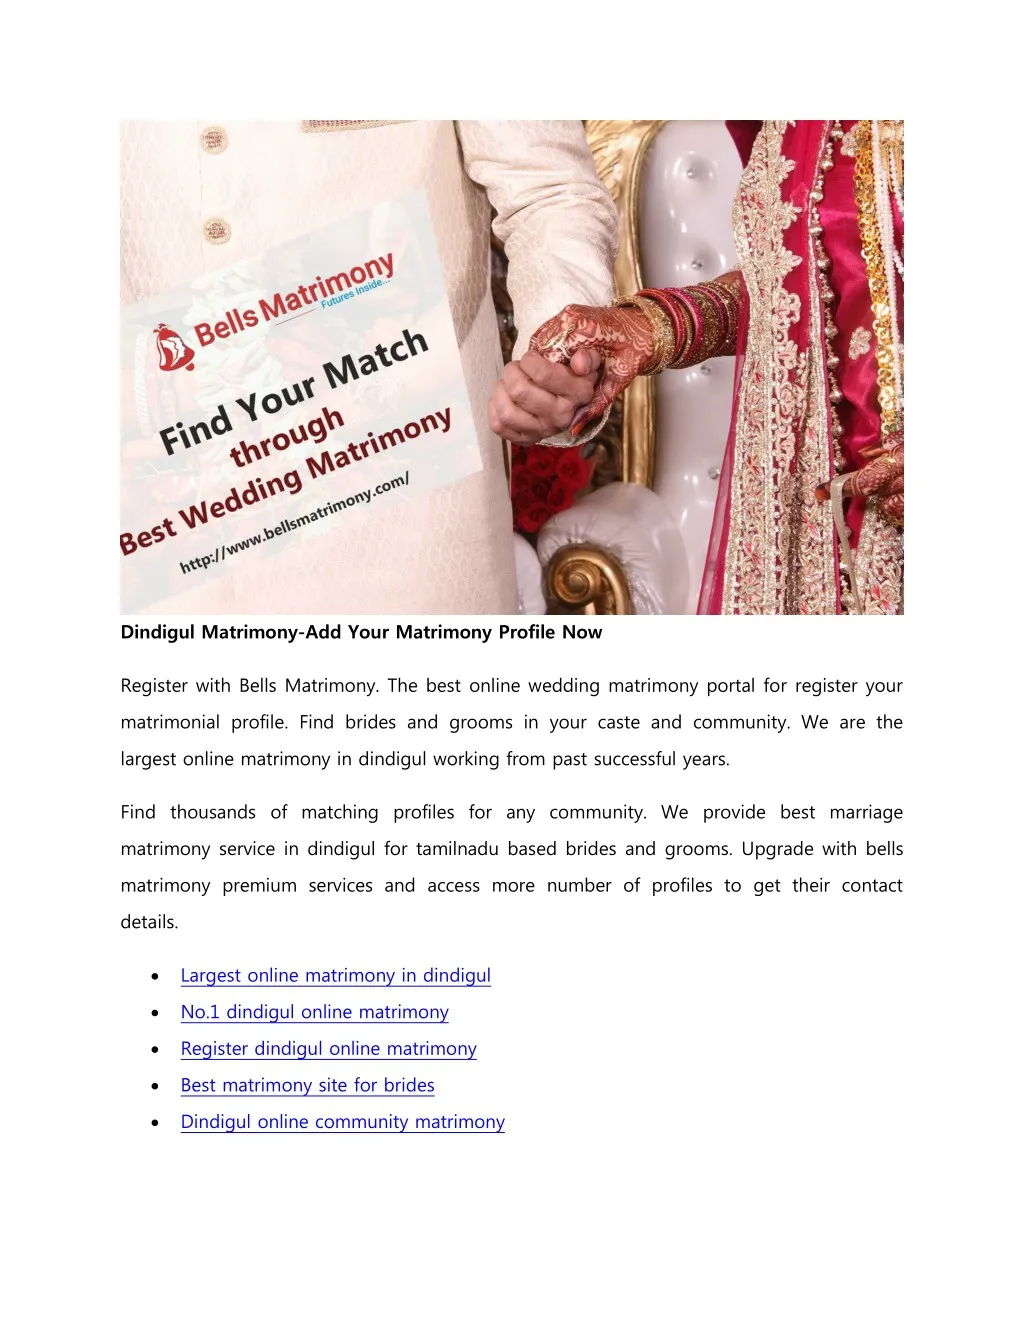 dindigul matrimony add your matrimony profile now